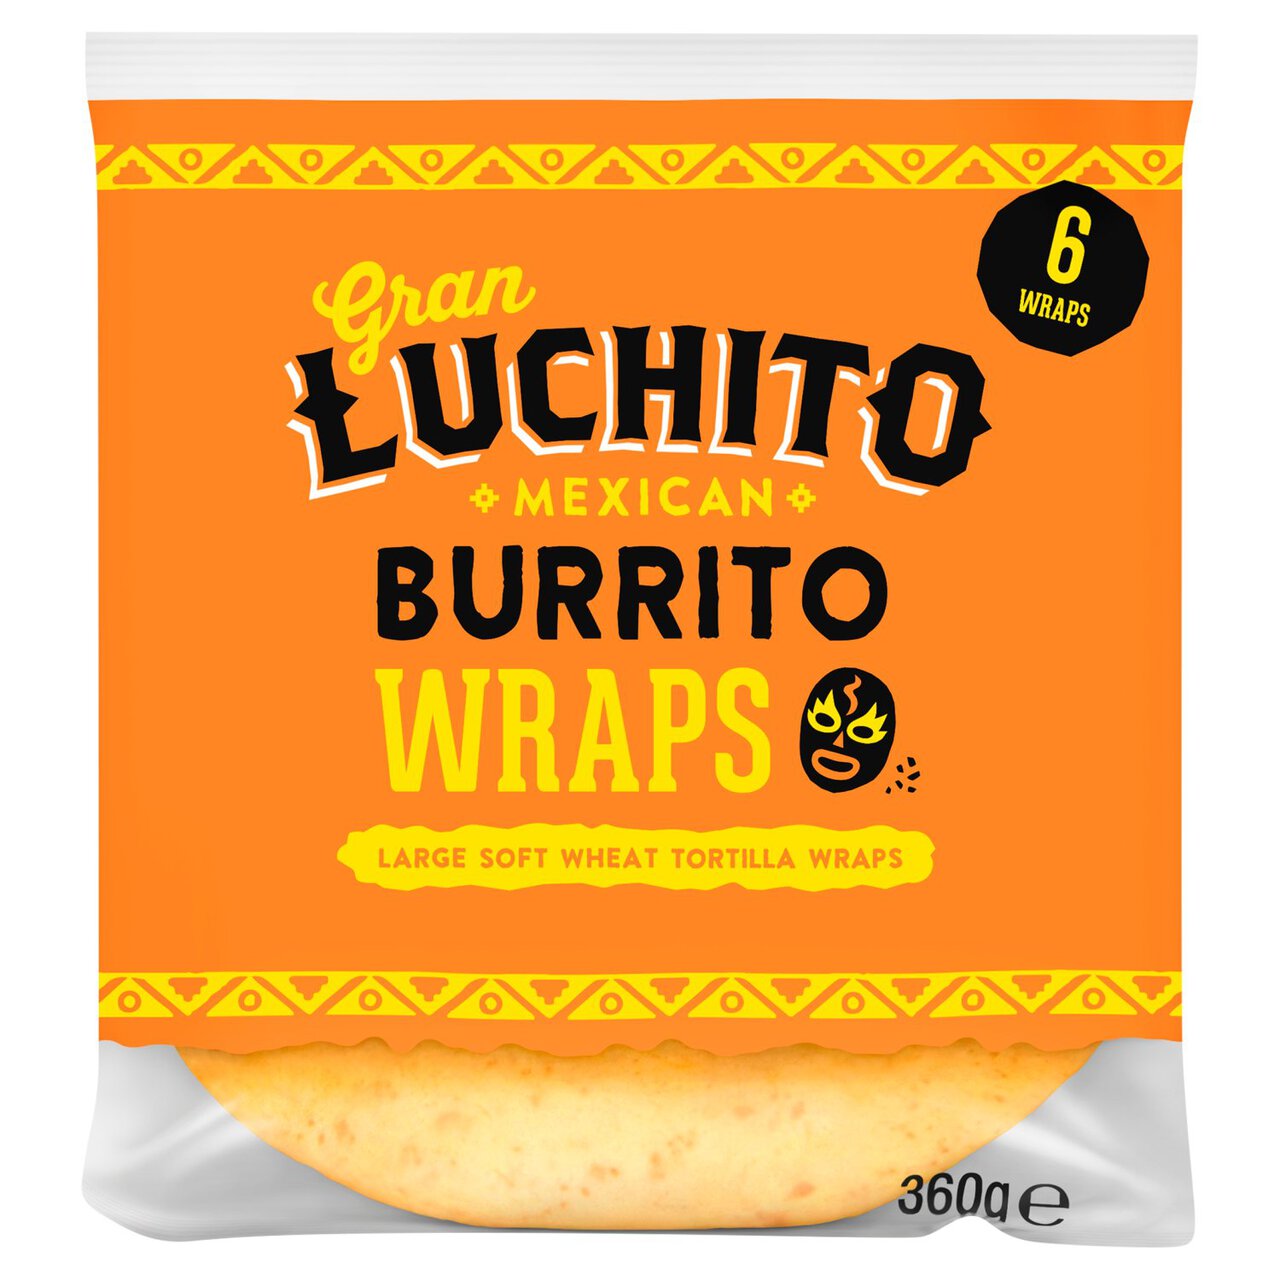 Gran Luchito Burrito Wraps 6 per pack